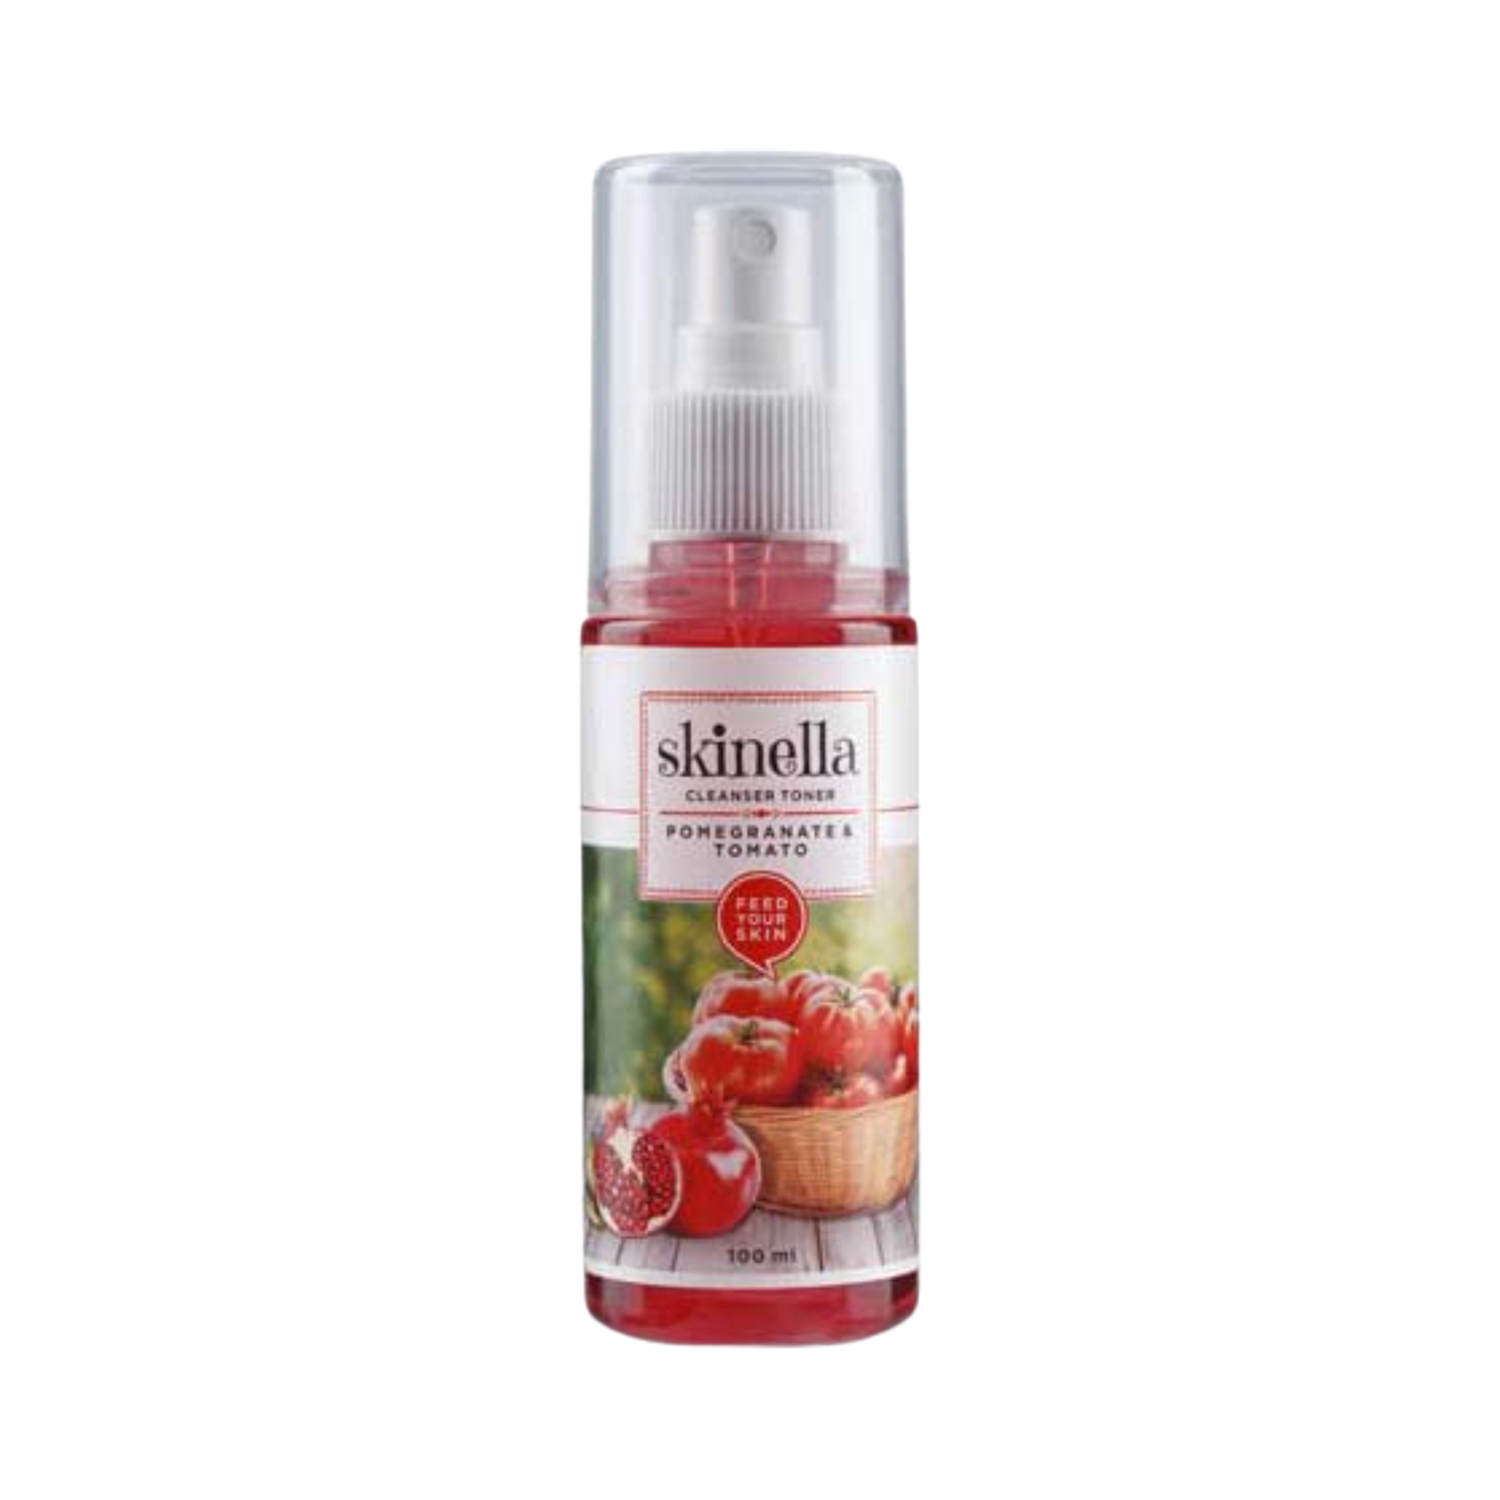 Skinella | Skinella Cleanser Toner - Pomegranate & Tomato (100ml)